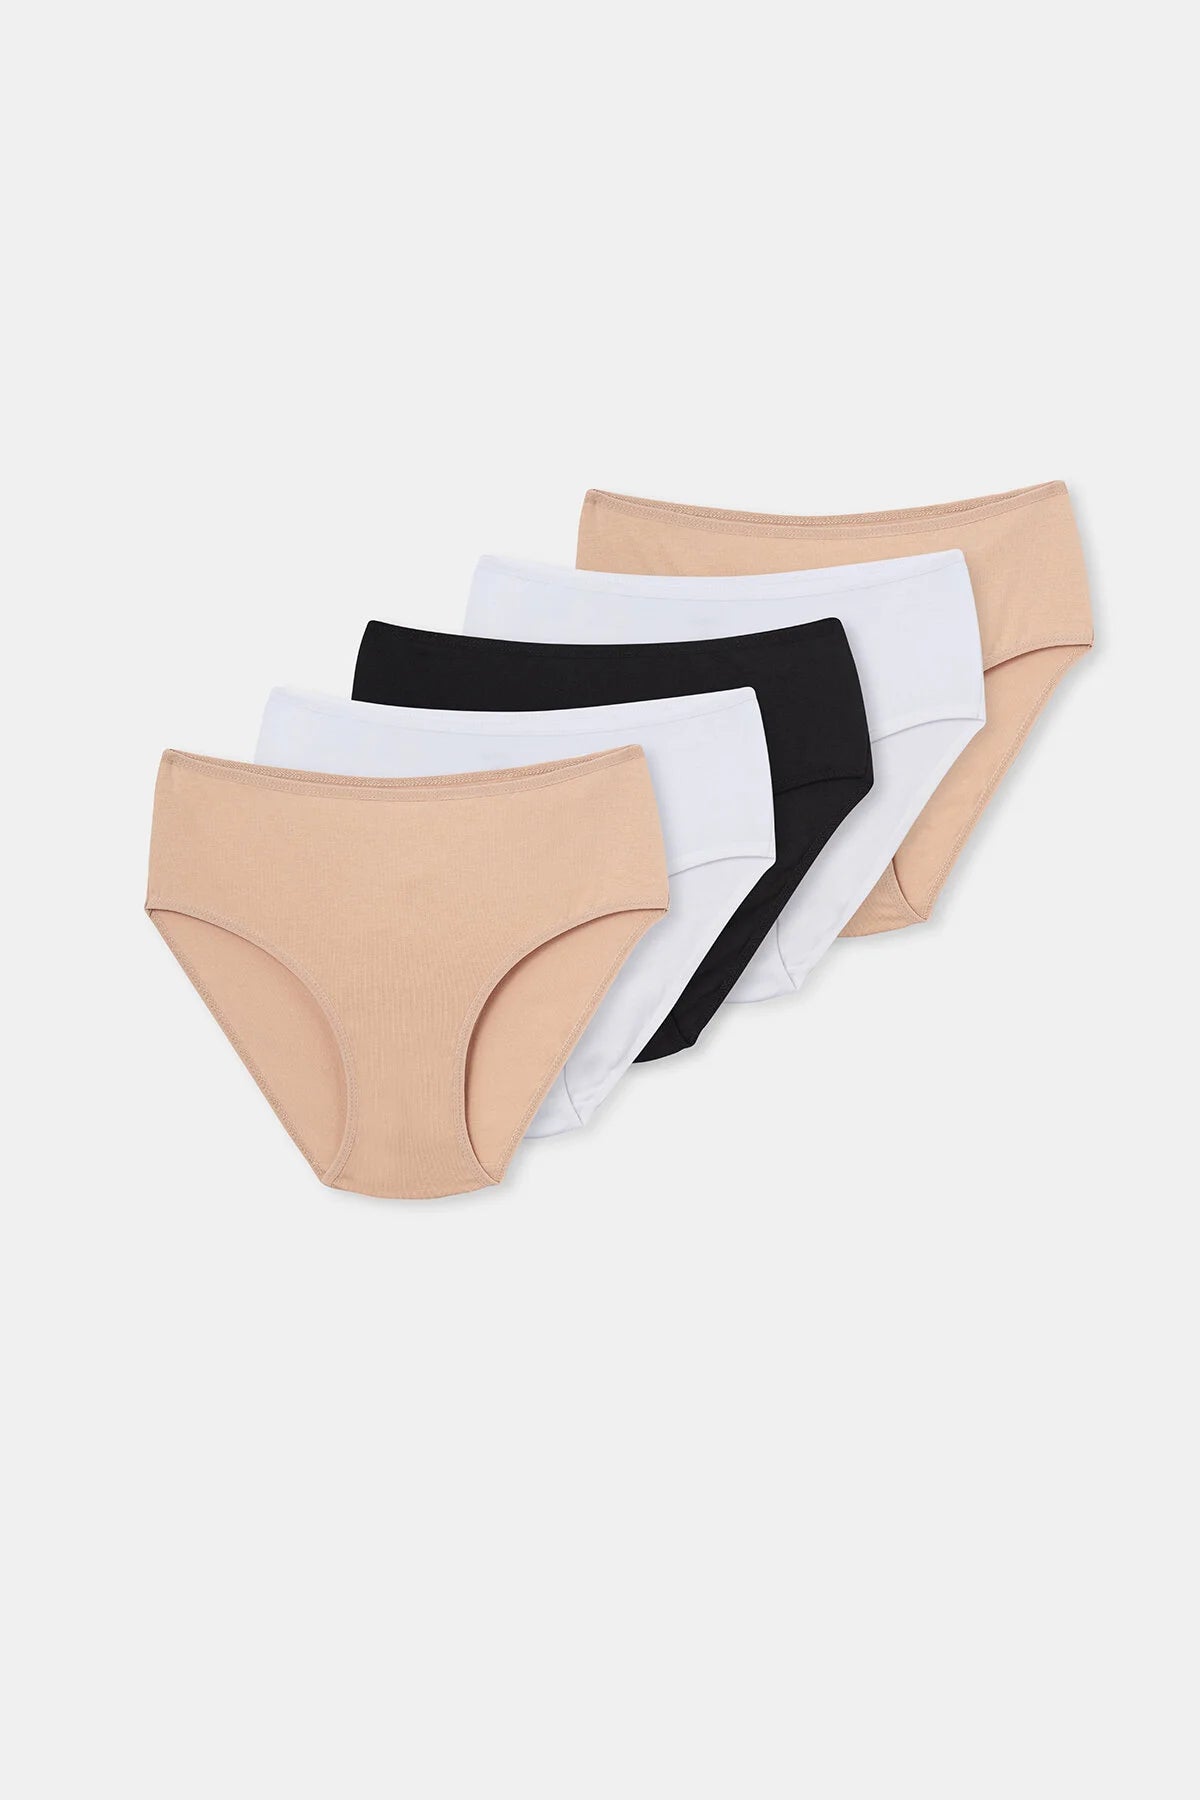 Mixed 5-Piece High Waist Women's Slip Panties